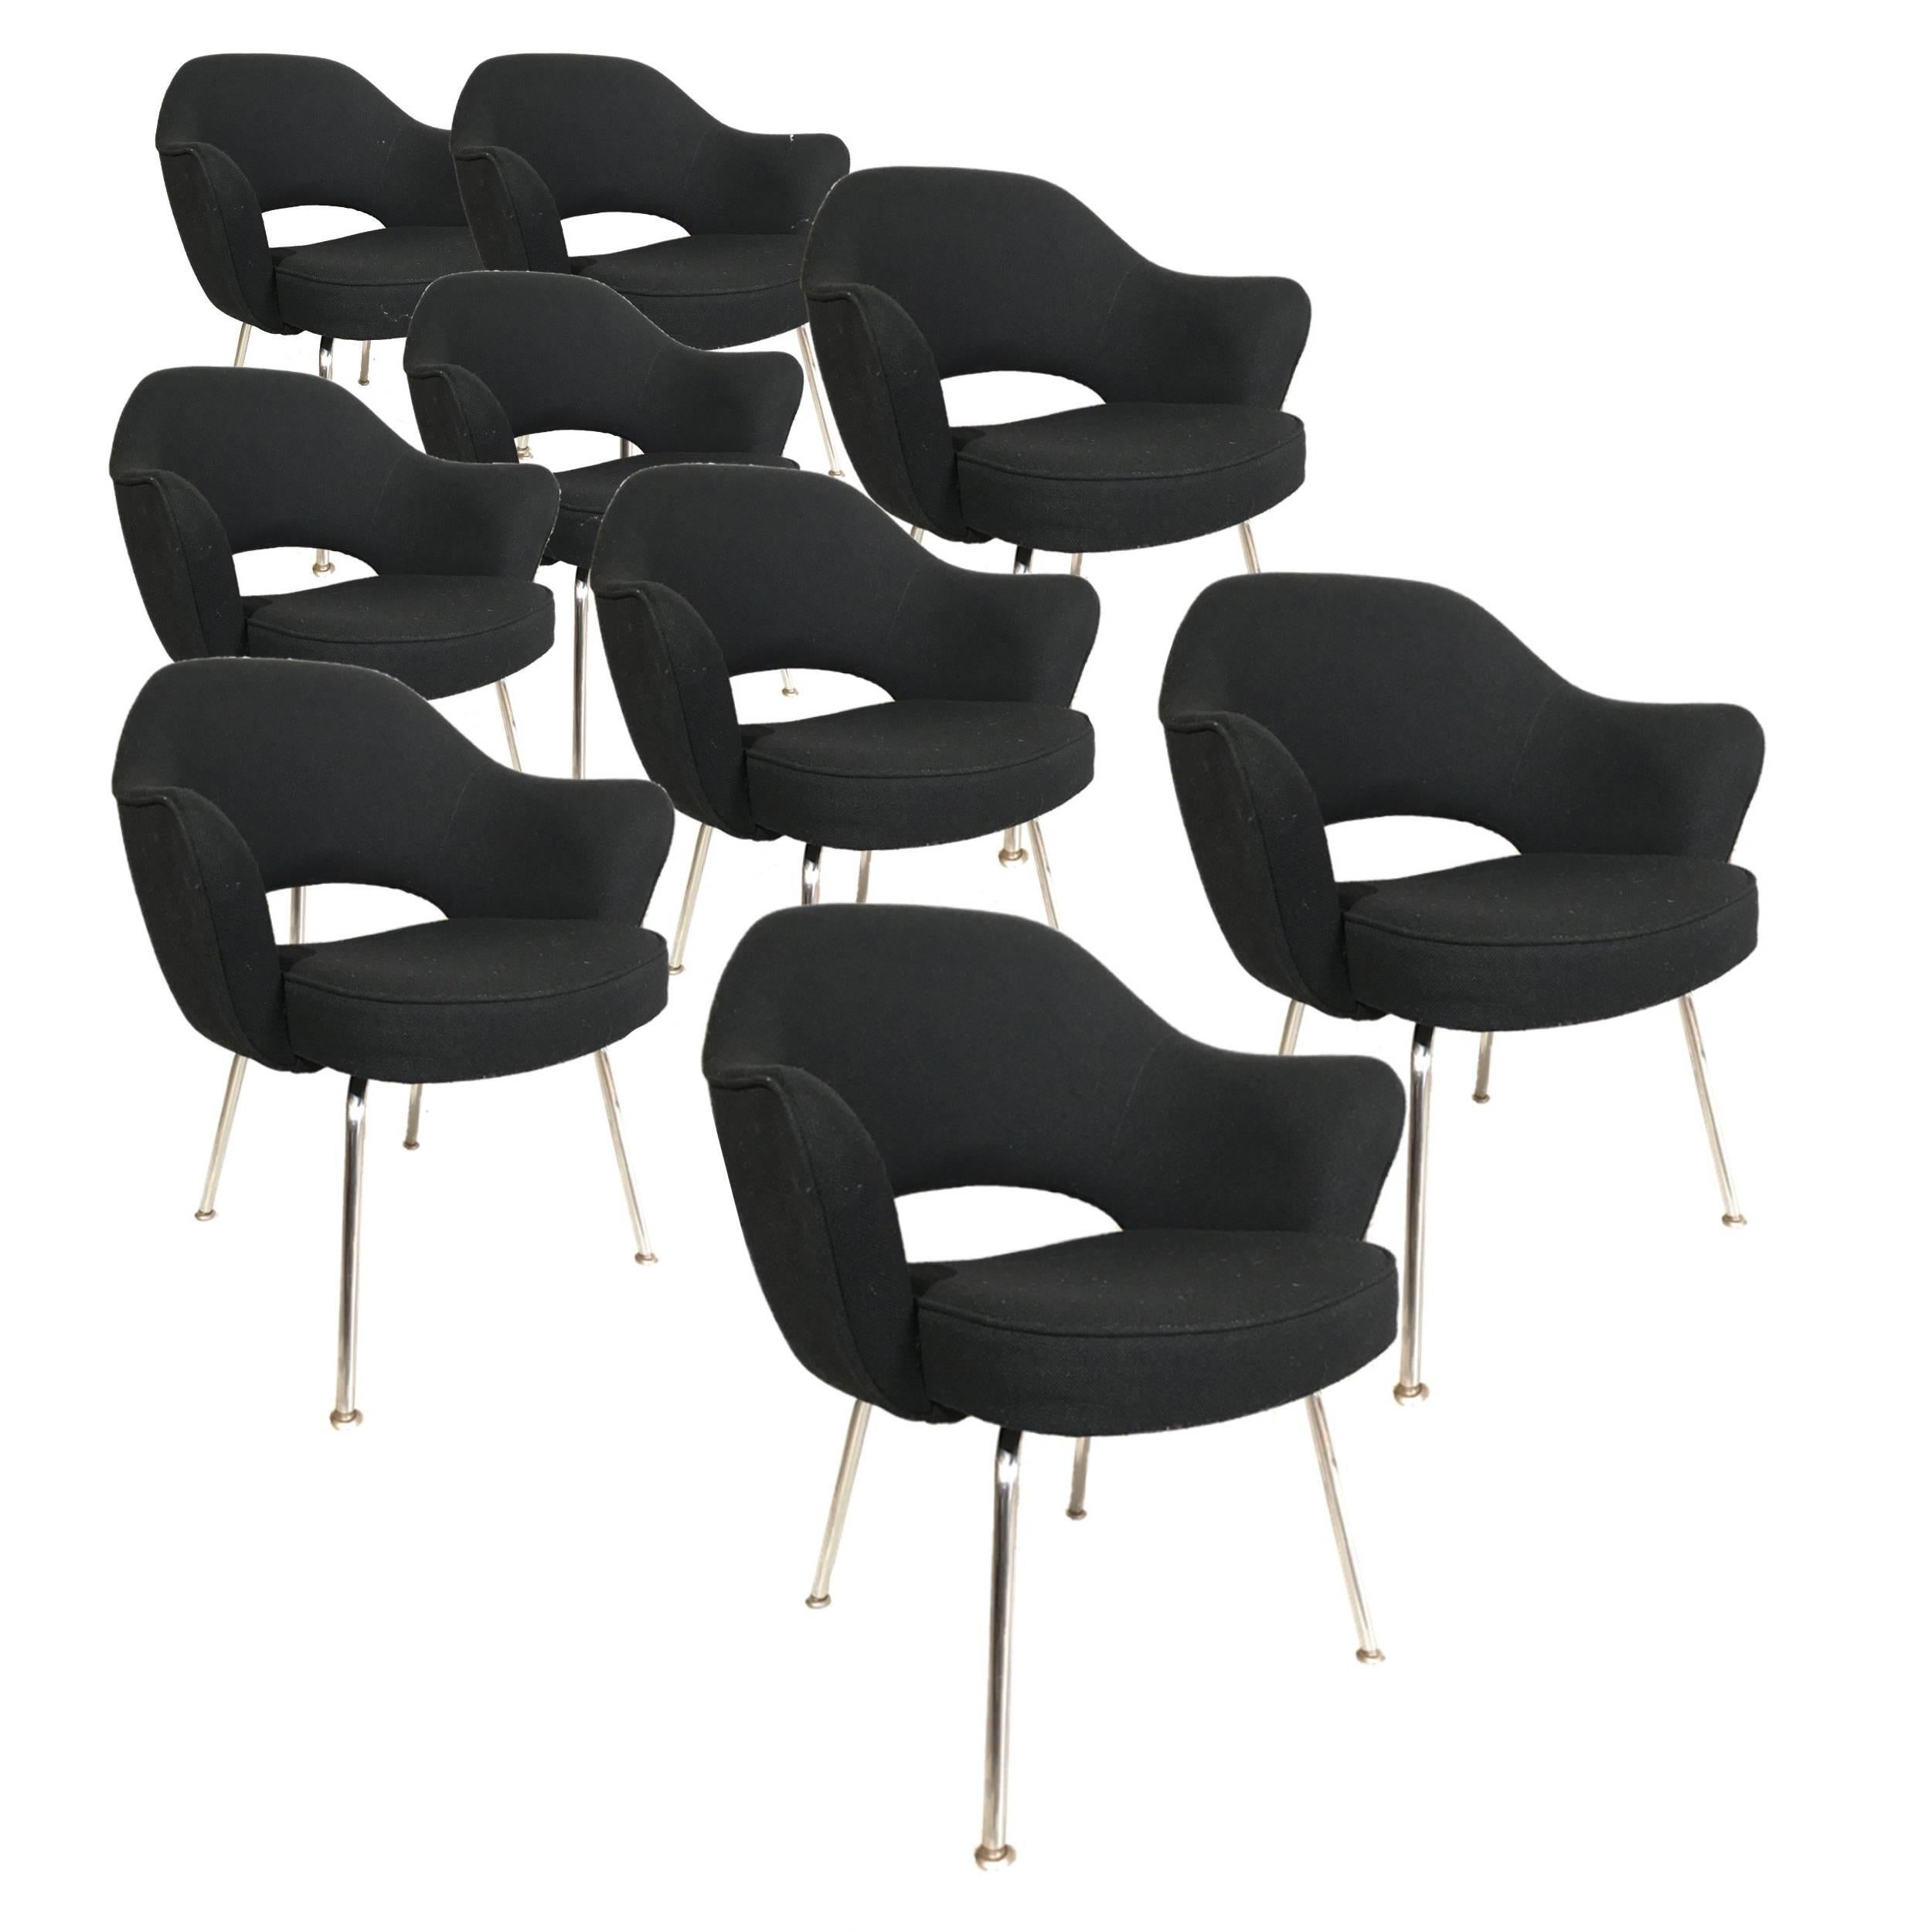 Knoll Eero Saarinen Executive Armchairs in Knoll Black Upholstery